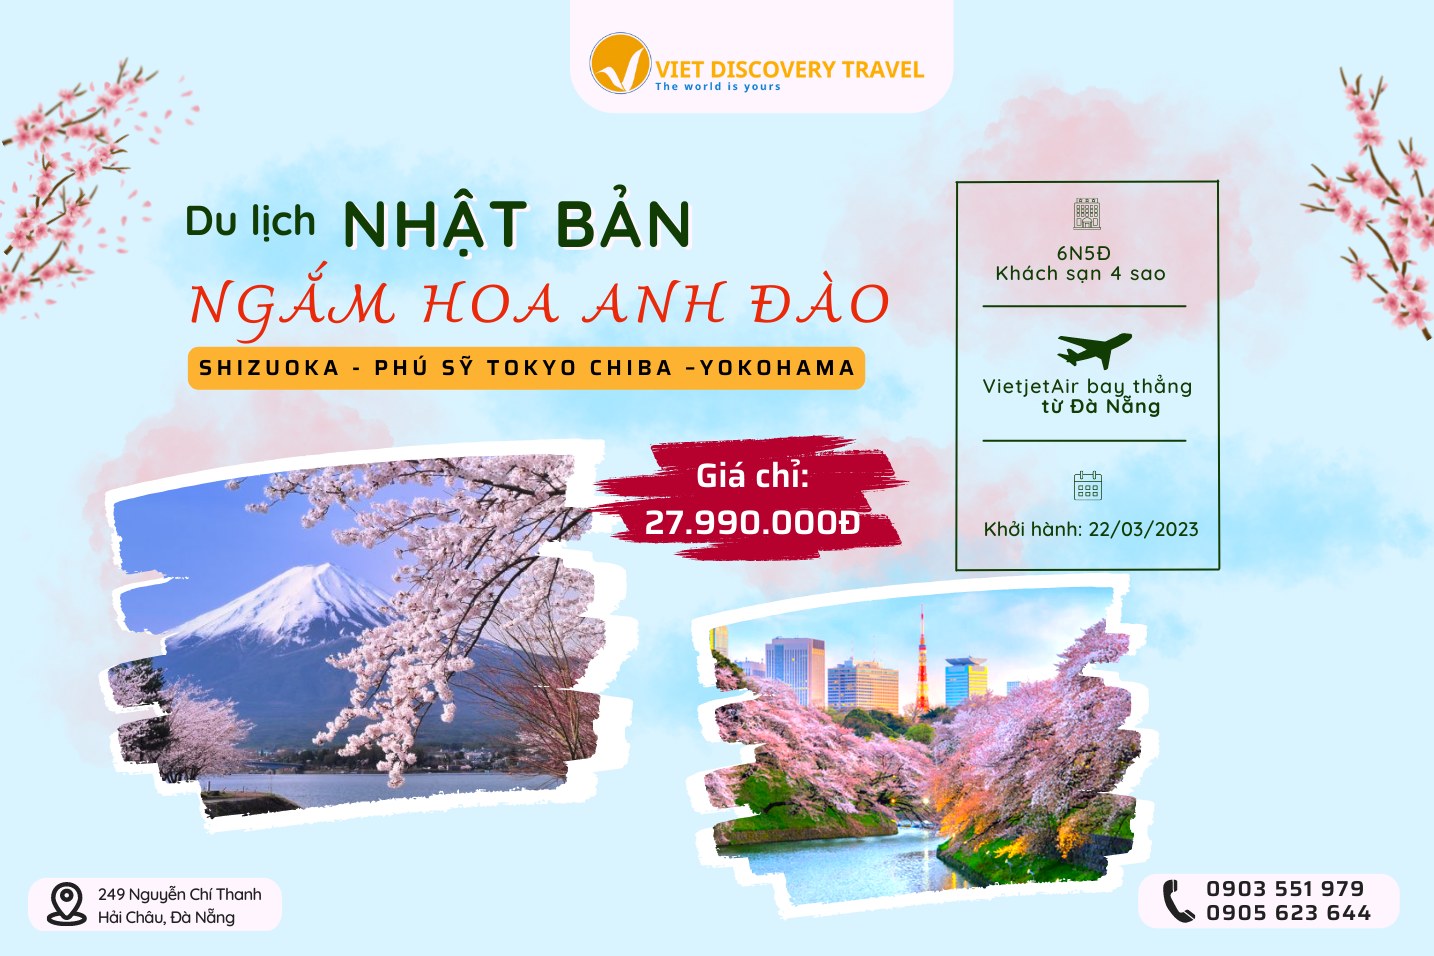 Các chương trình khuyến mãi lớn của Viet Discovery Travel Đà Nẵng